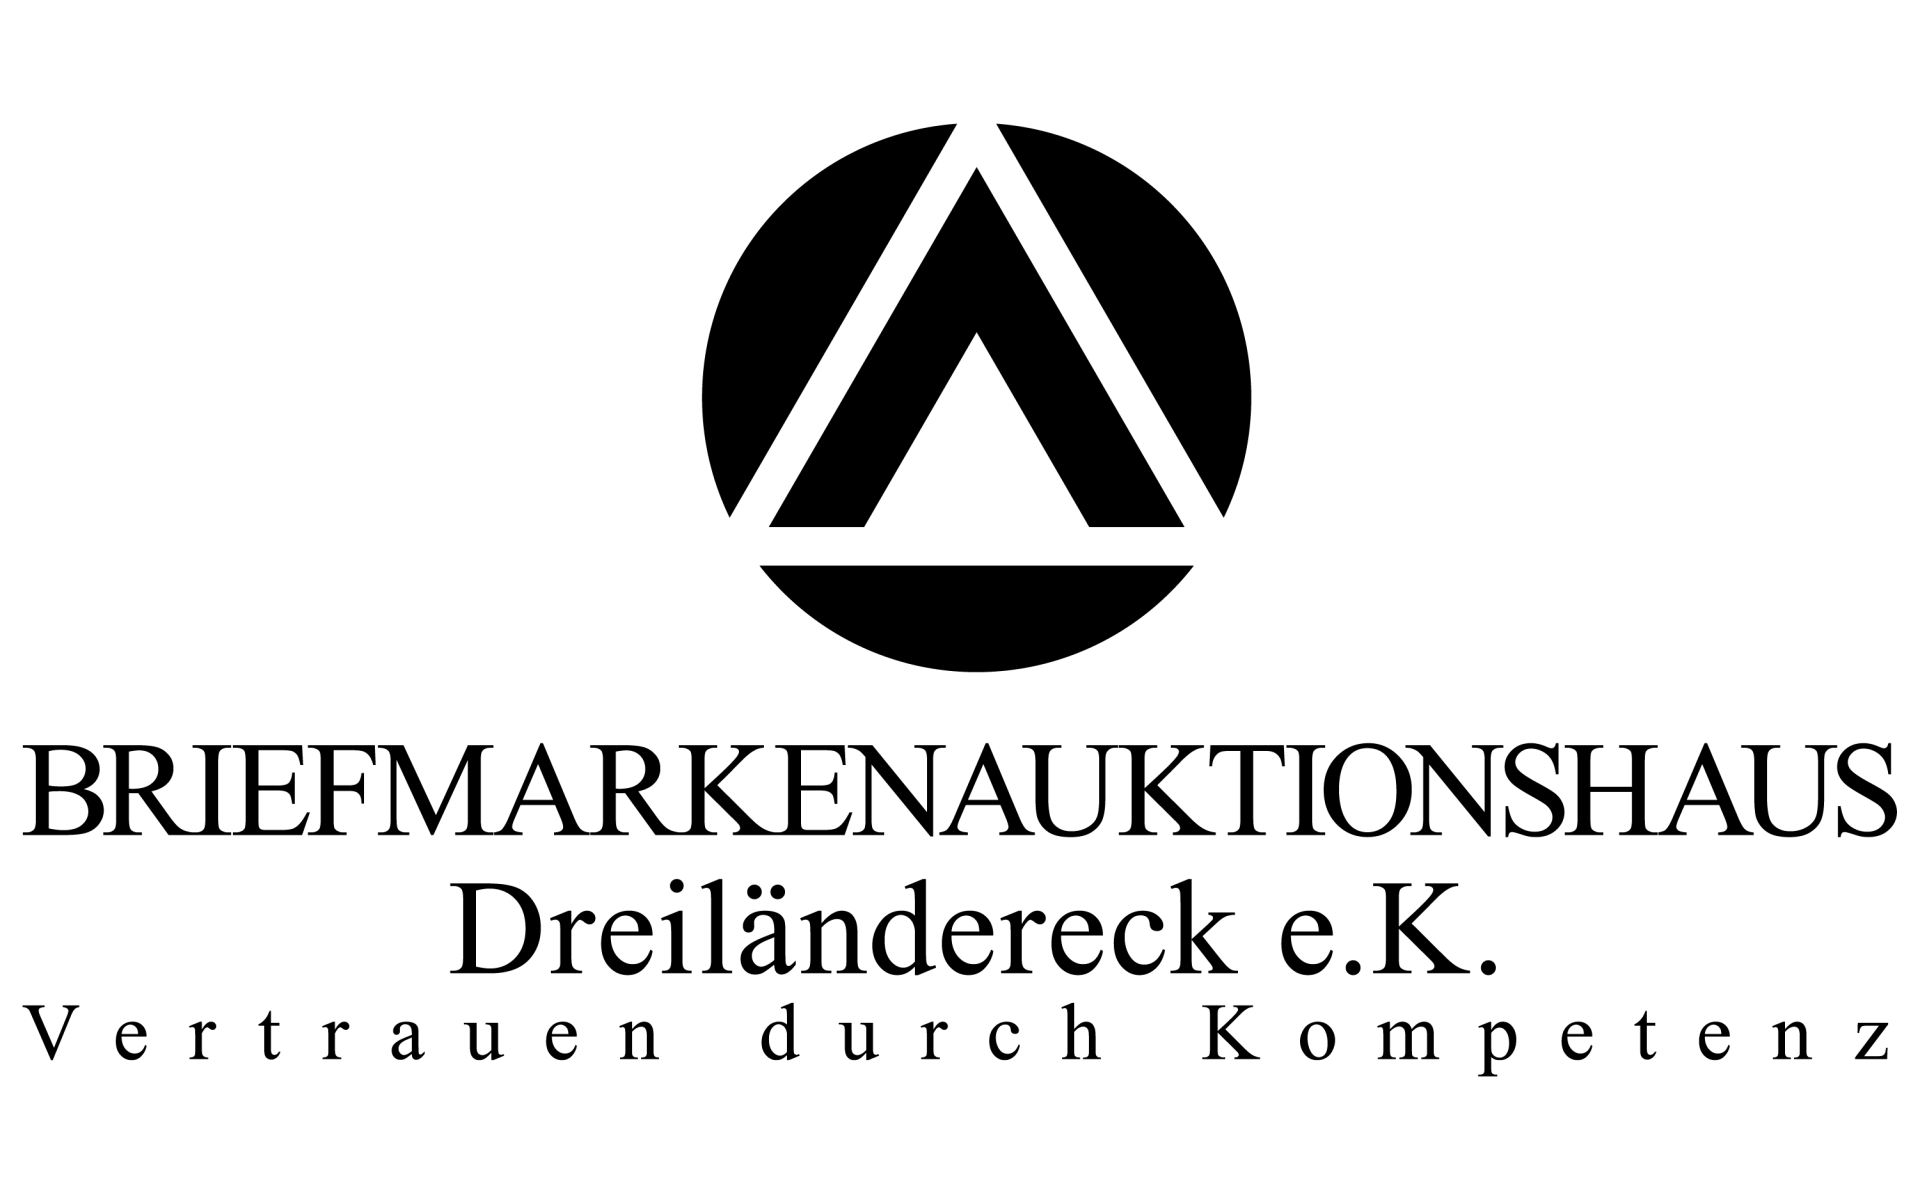 Briefmarkenauktionshaus Dreiländereck e.K.